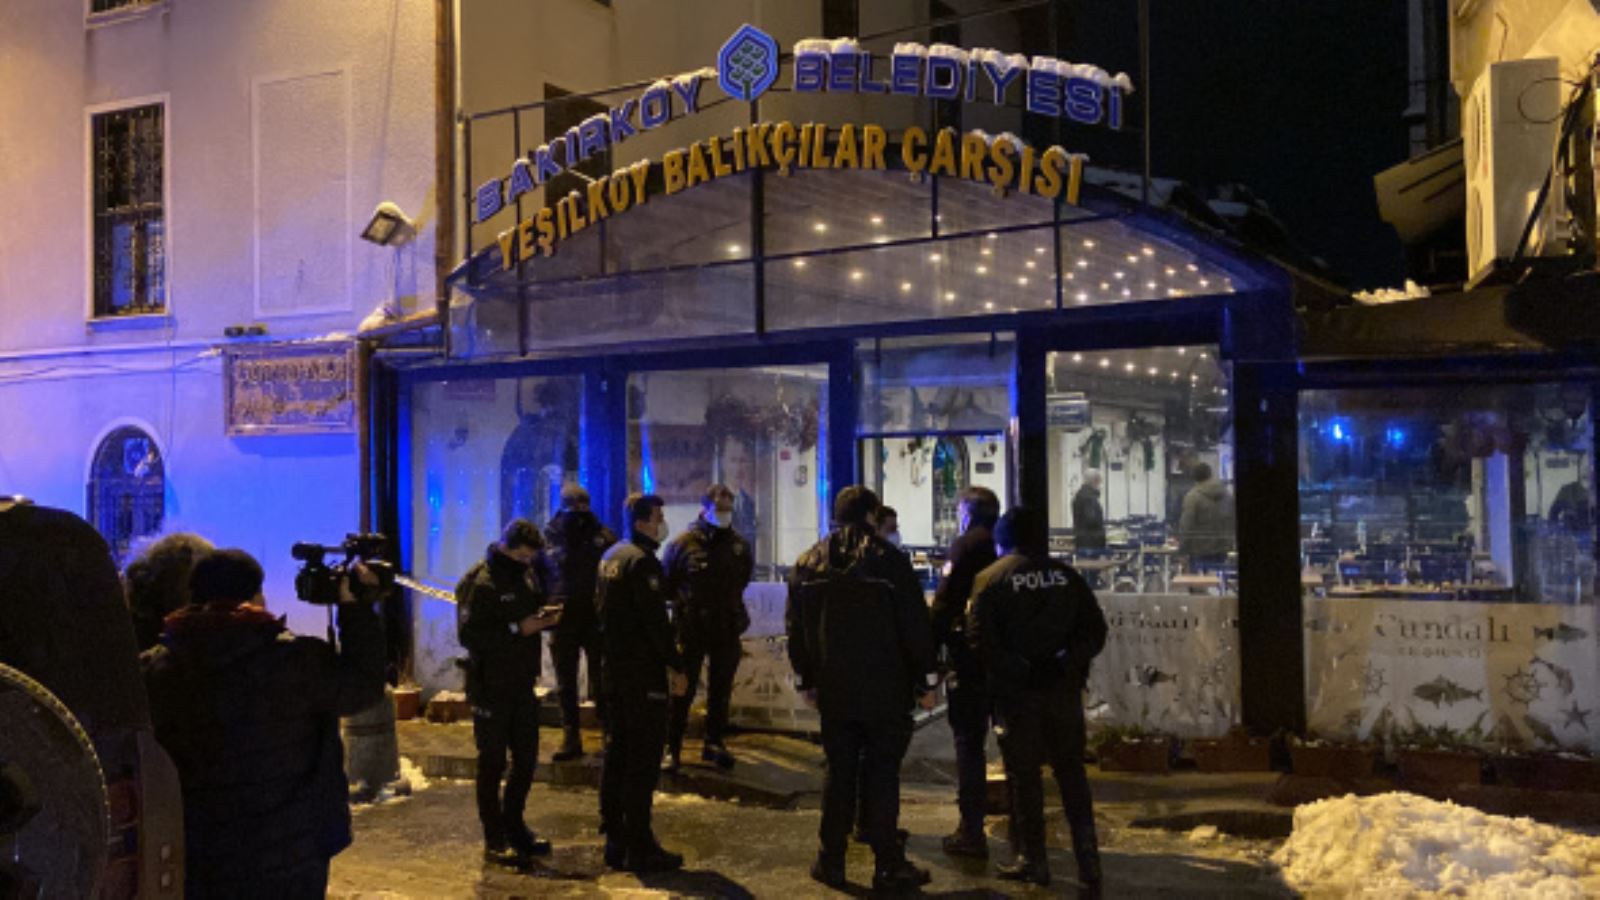 Beşiktaş eski yöneticisi, Ece Erken’in eşi Şafak Mahmutyazıcıoğlu silahlı saldırıda öldürüldü: İşte tüm ayrıntılar…